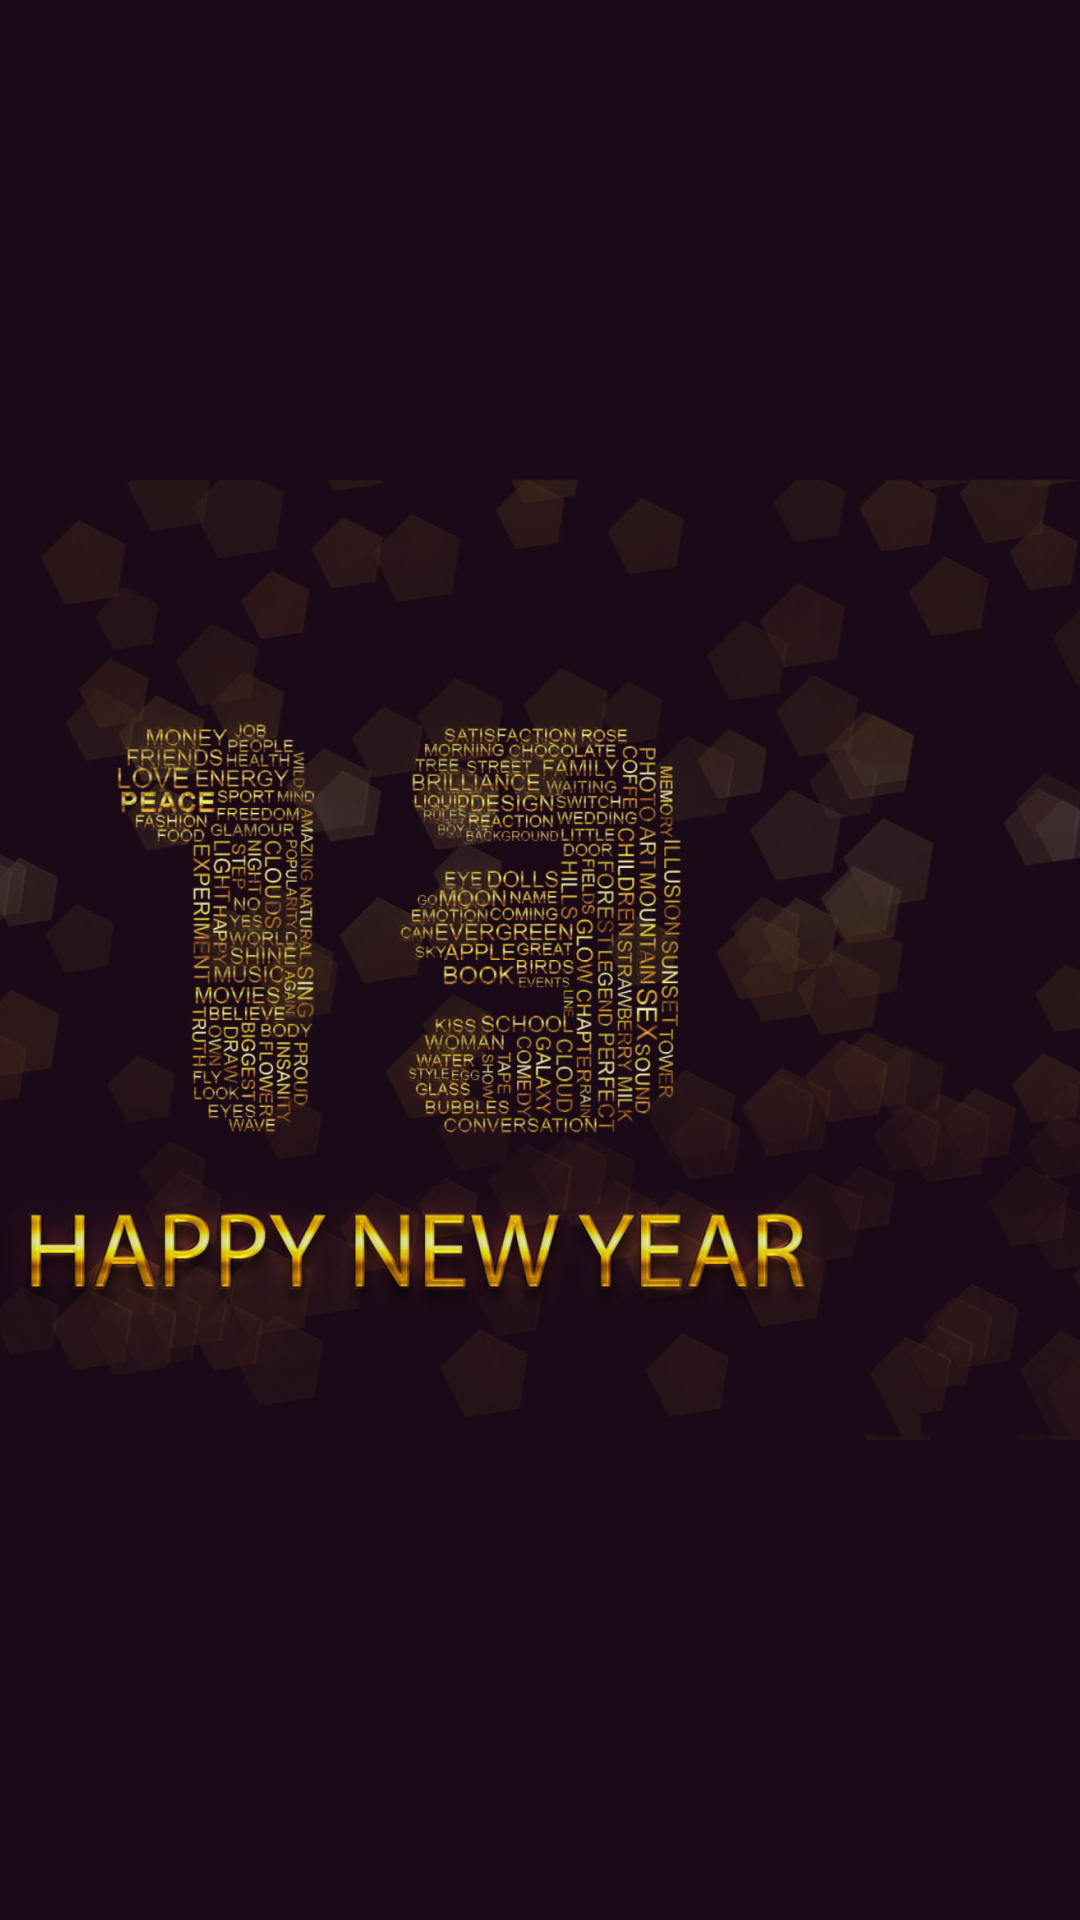 Happy New Year 2013 screenshot #1 1080x1920